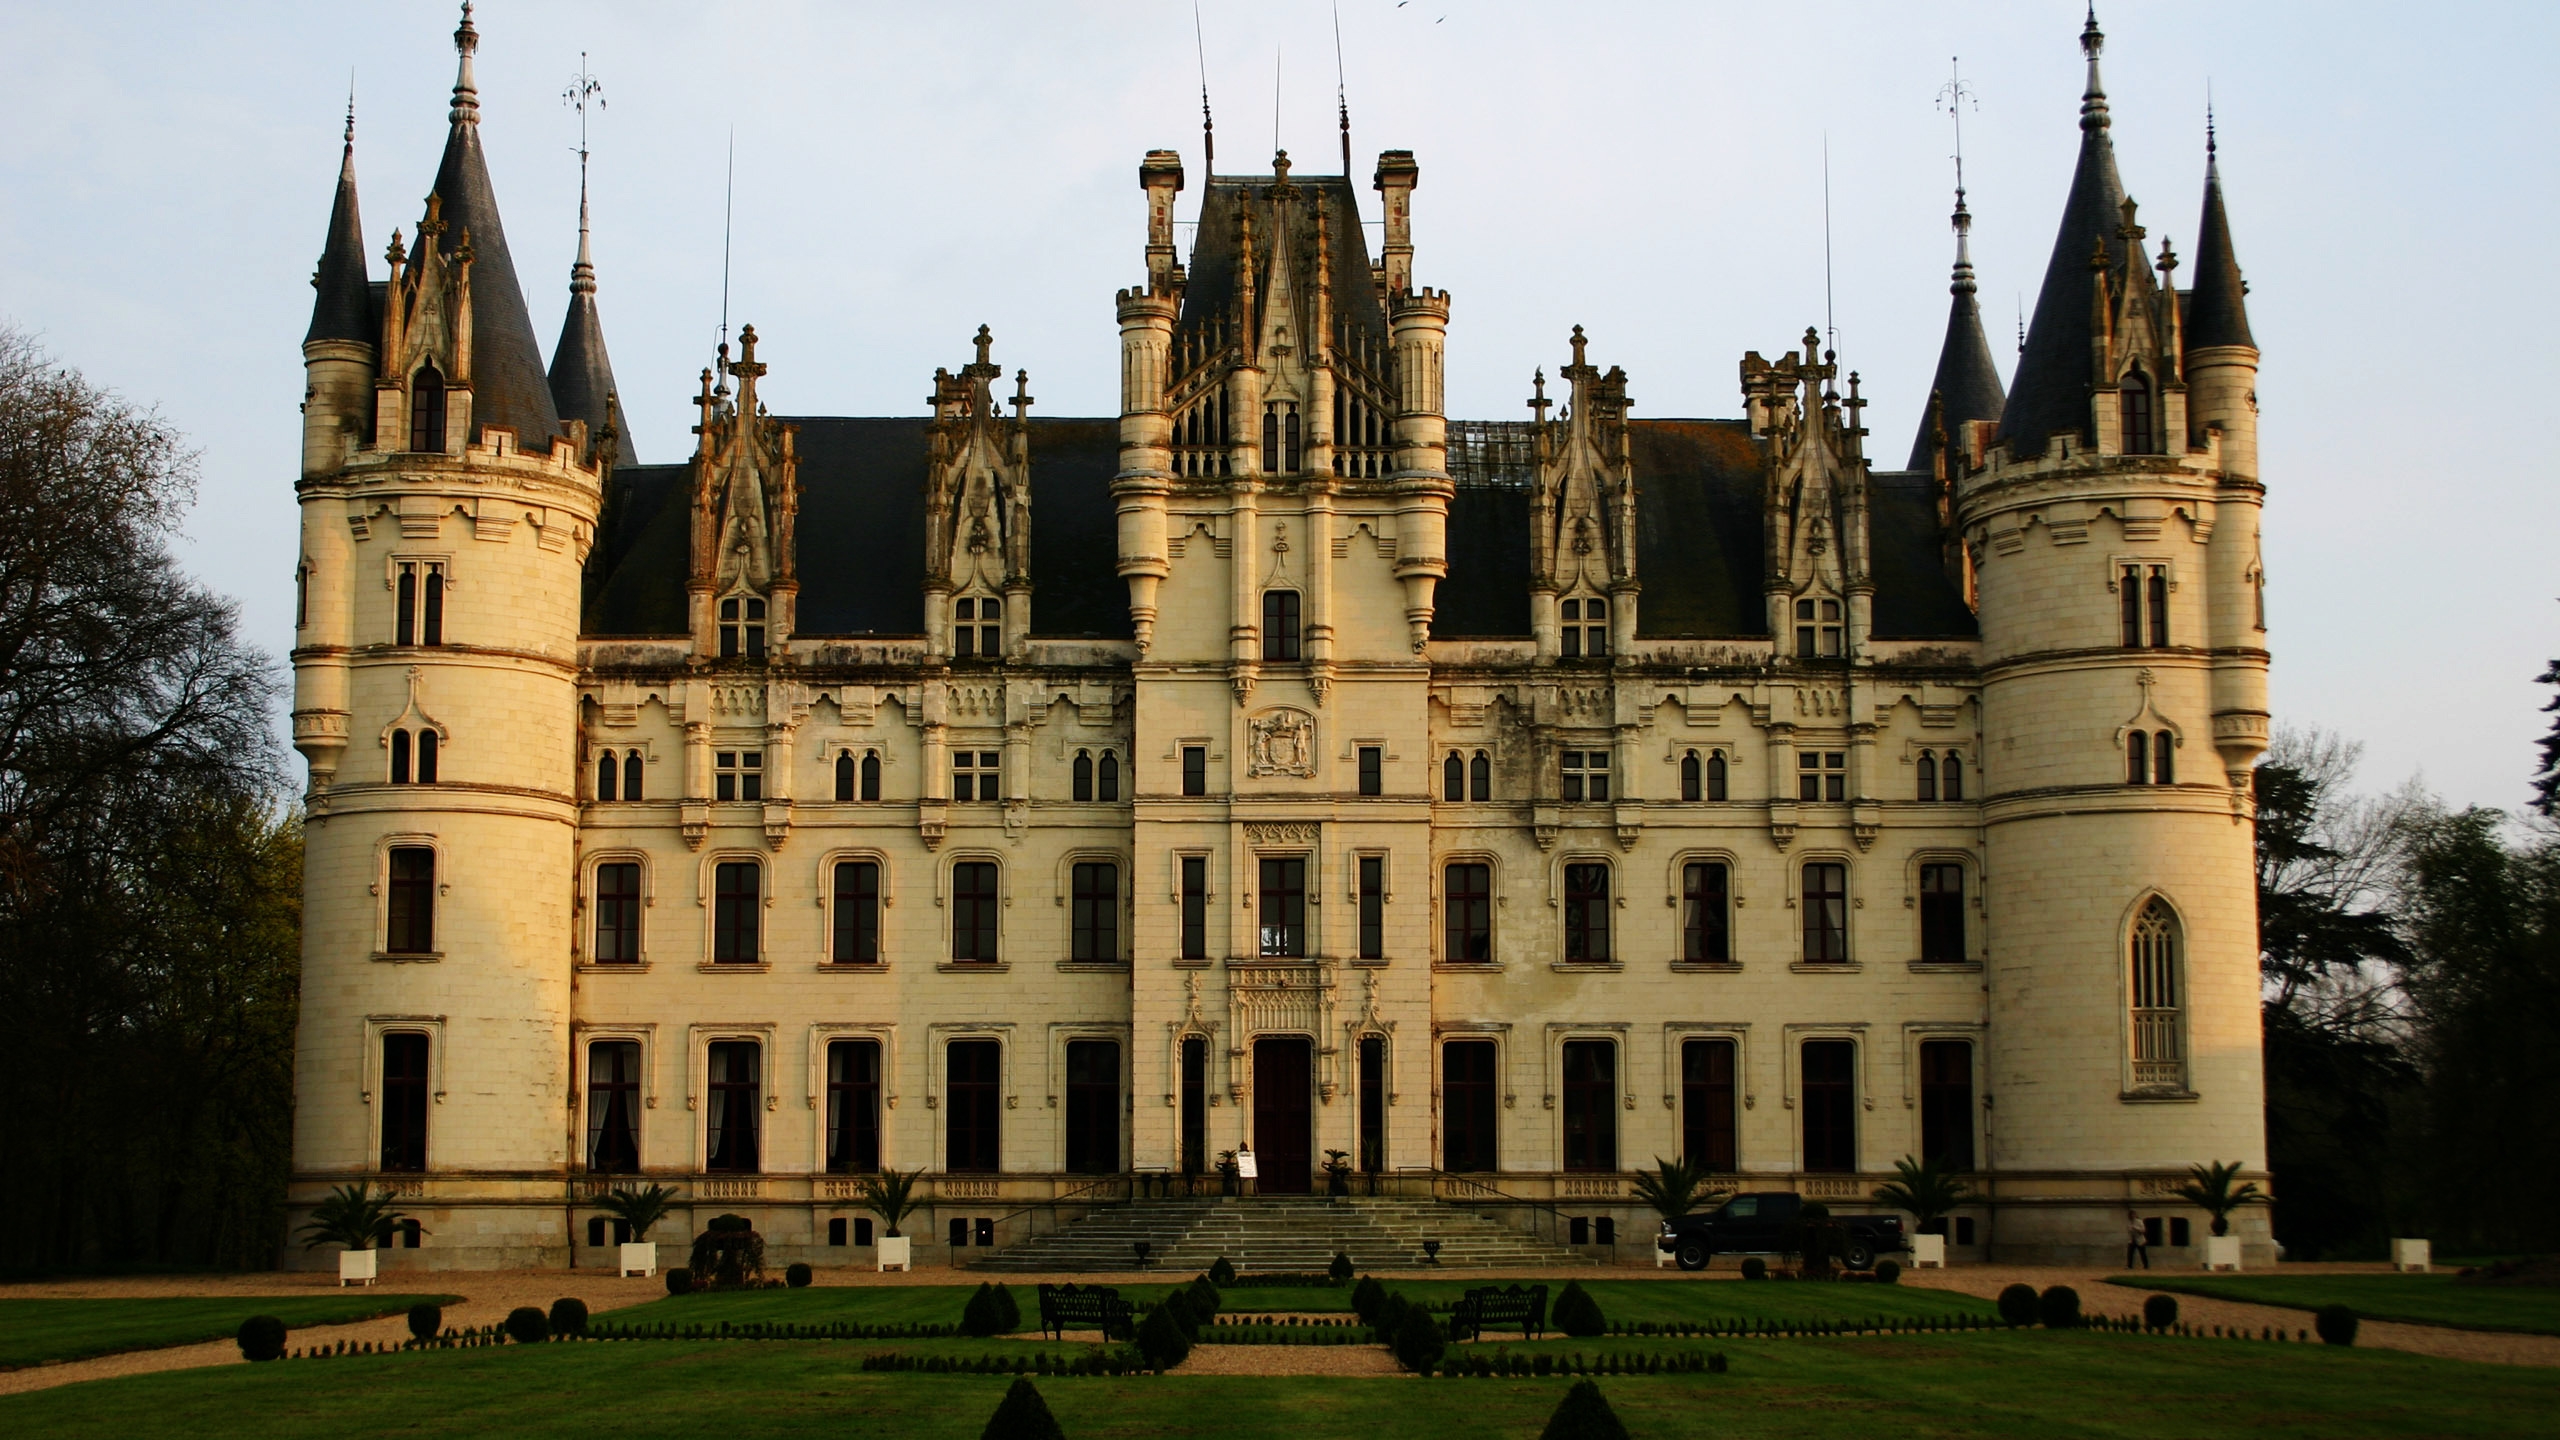 Castle Chateau de Challain for 2560x1440 HDTV resolution